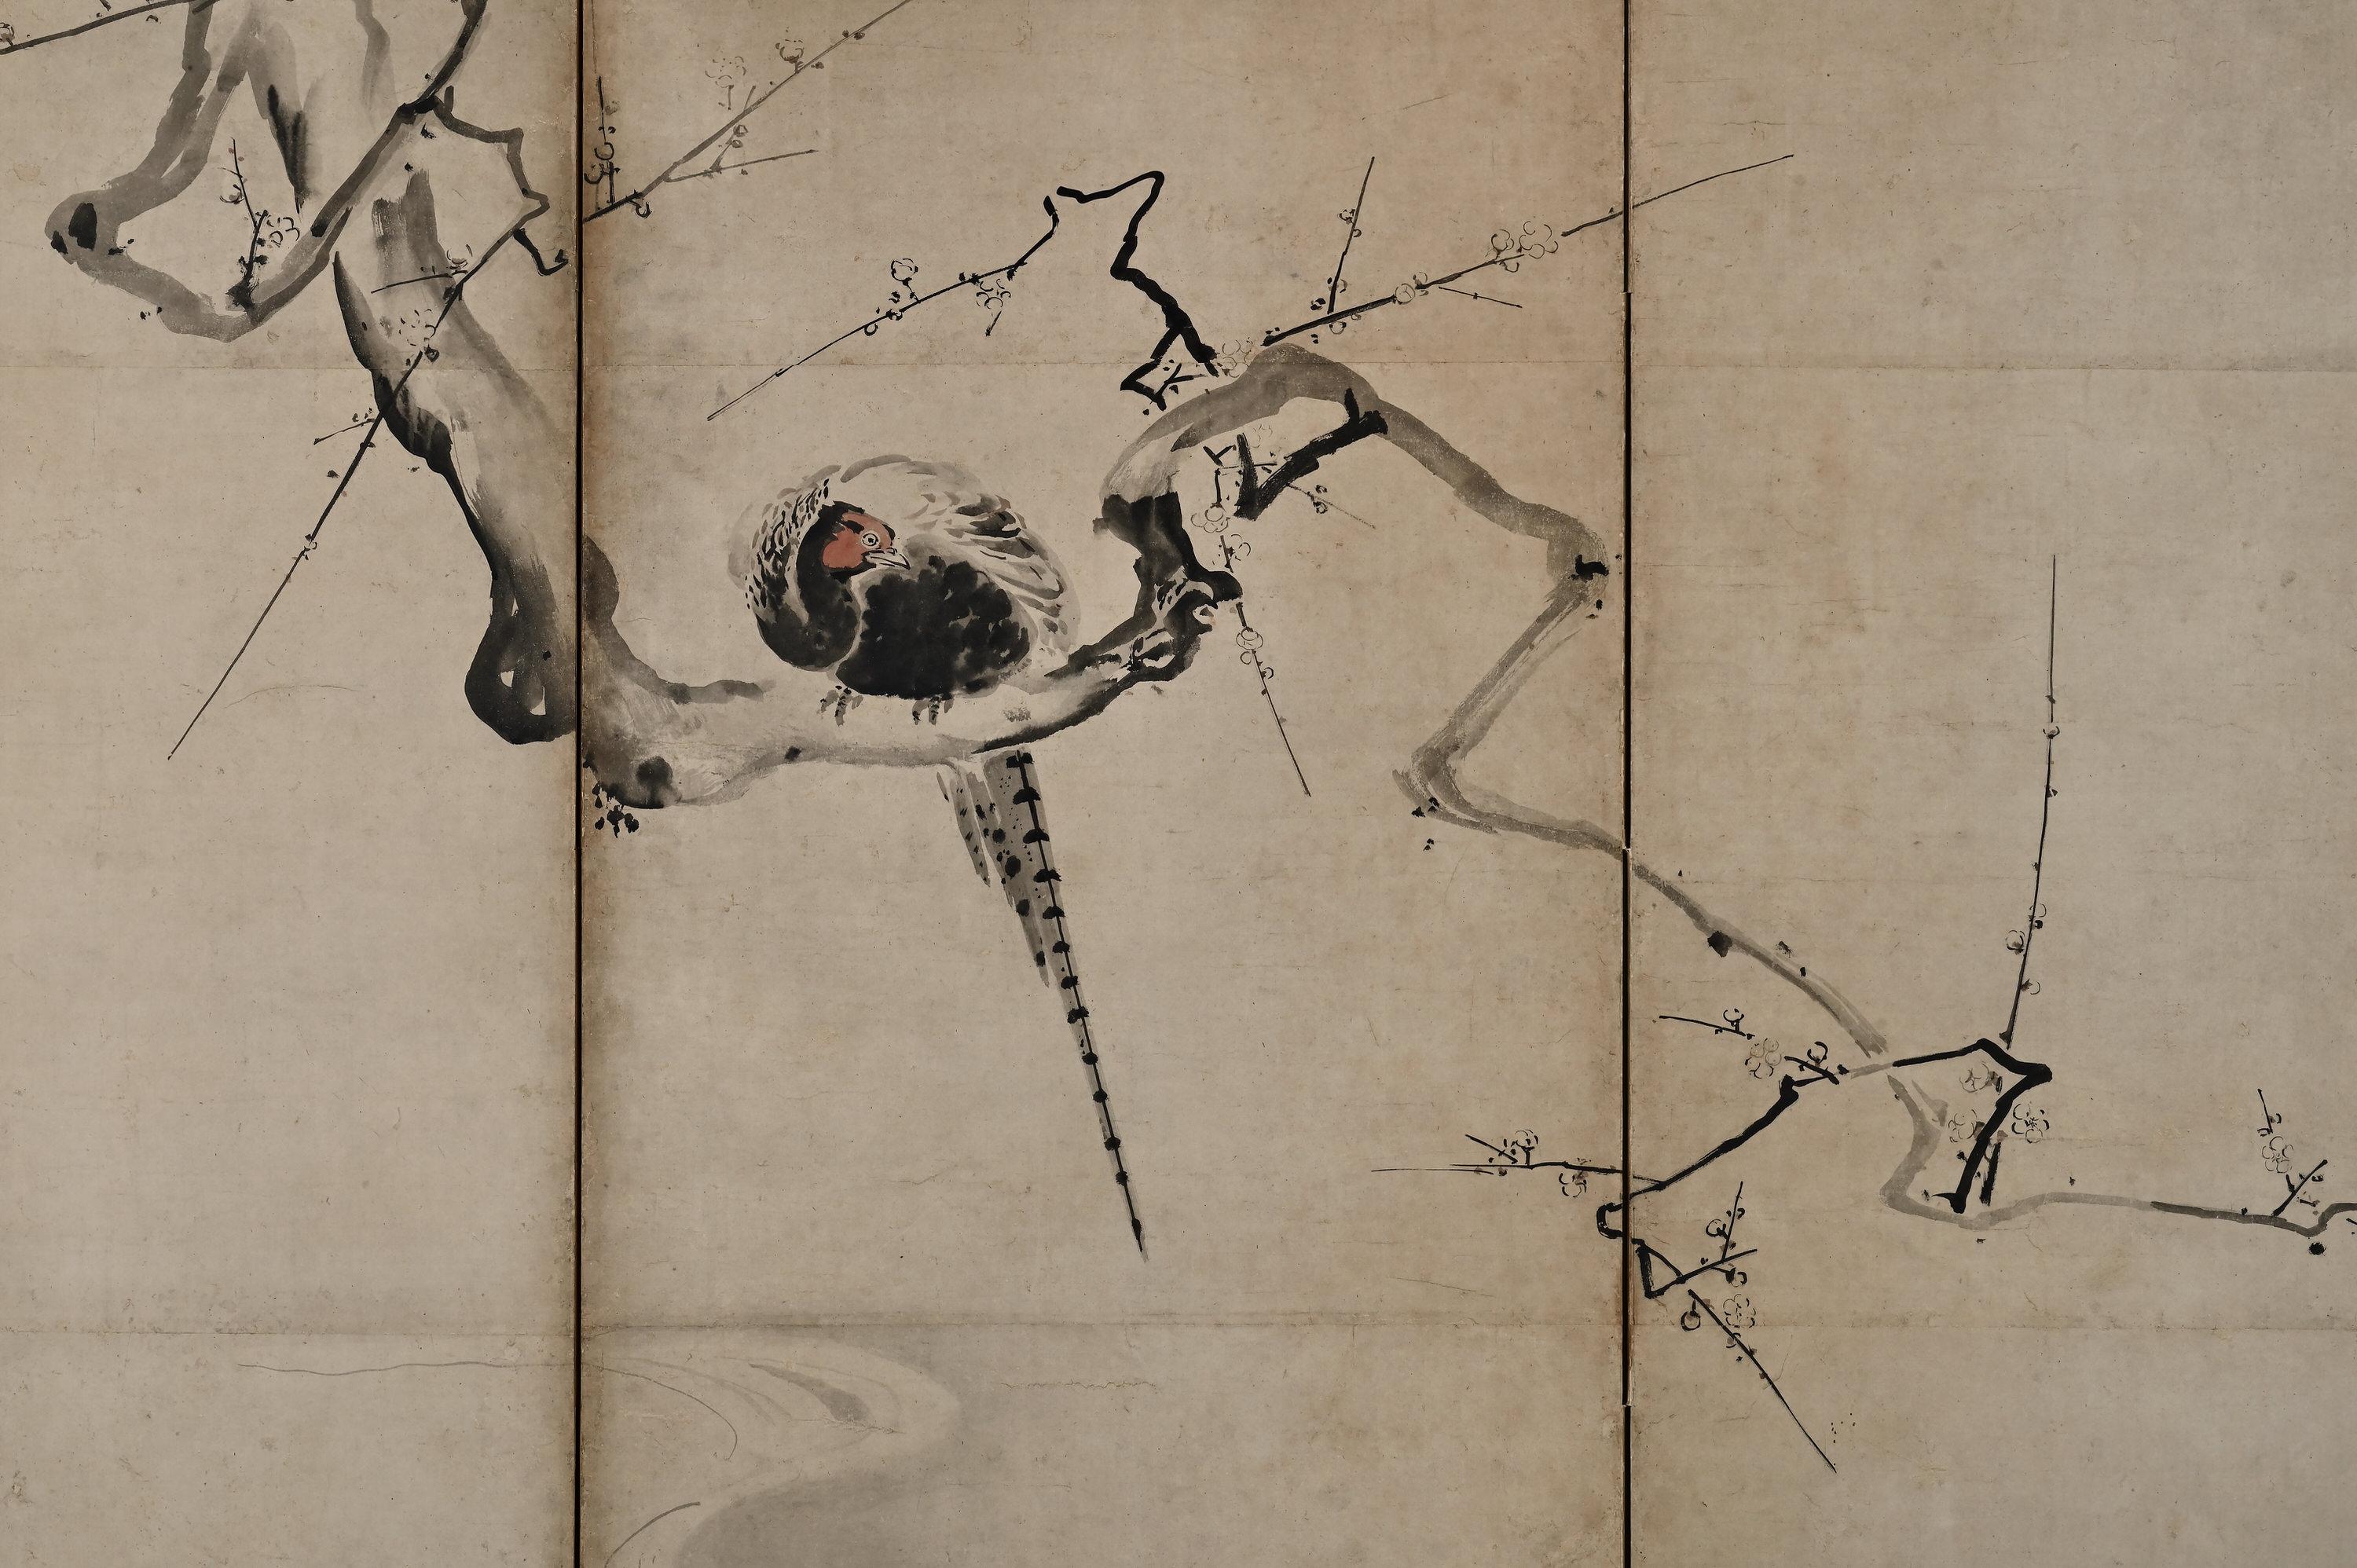 Kano Naonobu (1607-1650)
Prunier et oiseaux
Écran japonais à six volets. Encre et couleurs légères sur papier.

Dans cette œuvre à l'encre évocatrice qui s'étend sur un paravent à six panneaux, nous voyons l'aboutissement de l'élégance et du